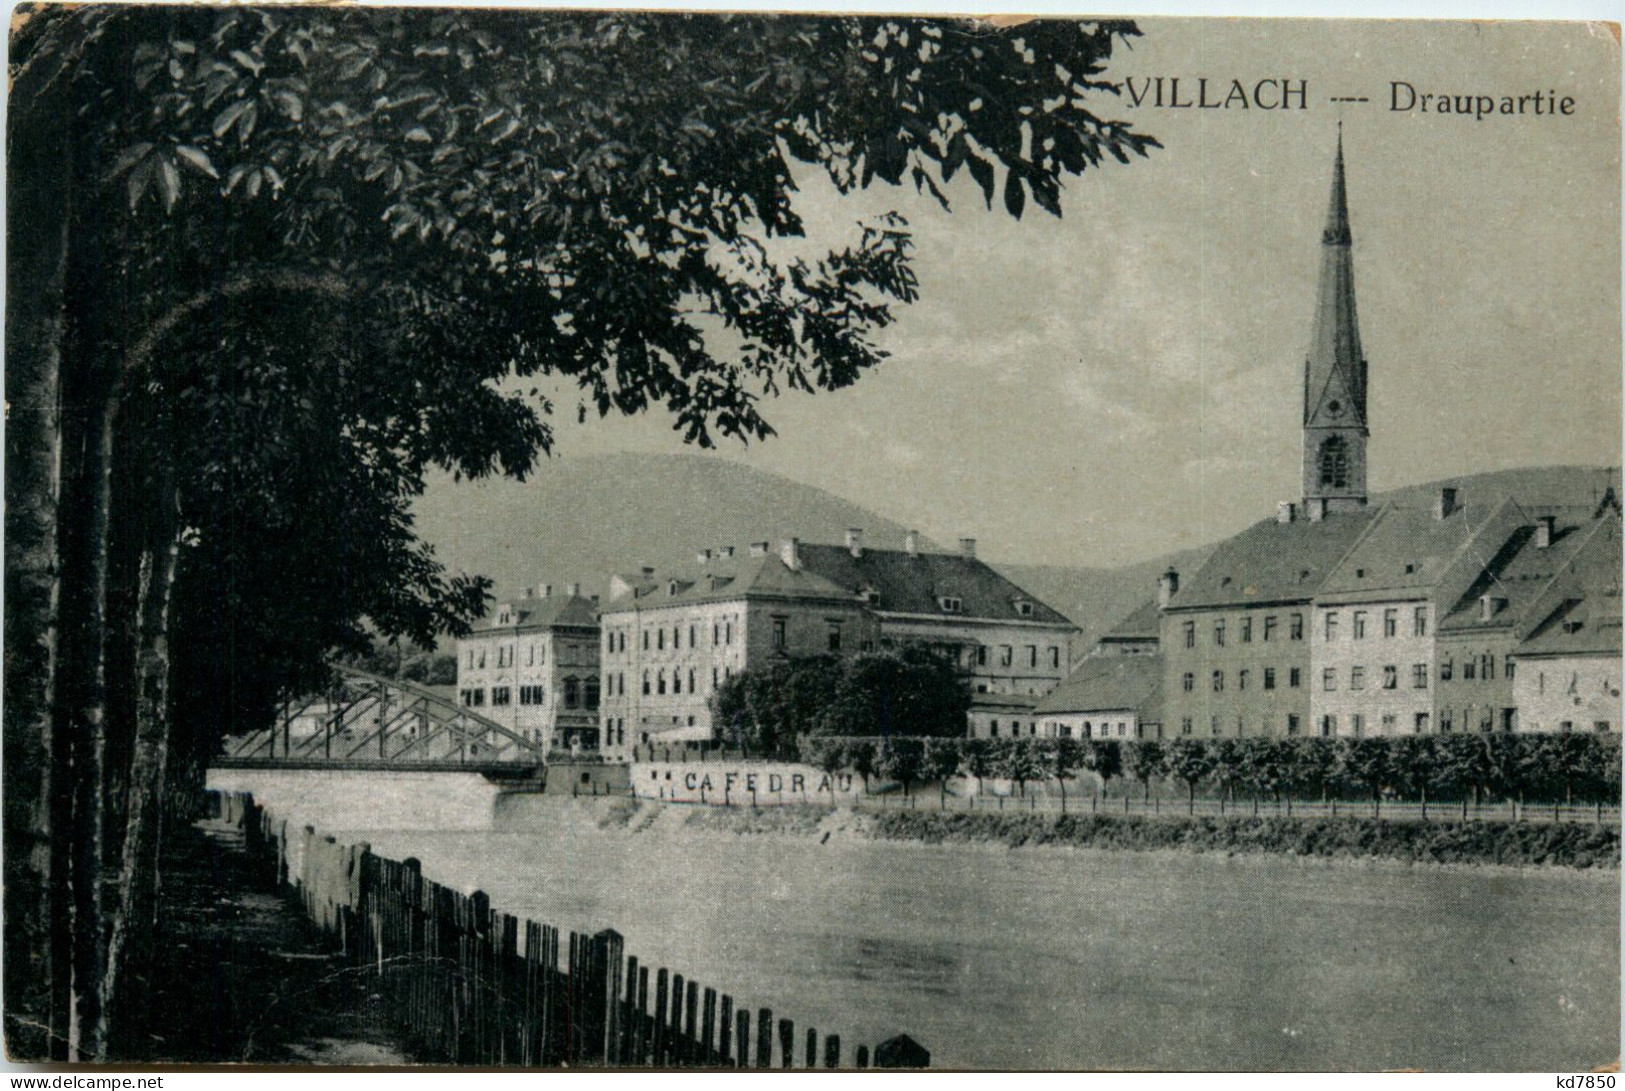 Villach, Draupartie - Villach